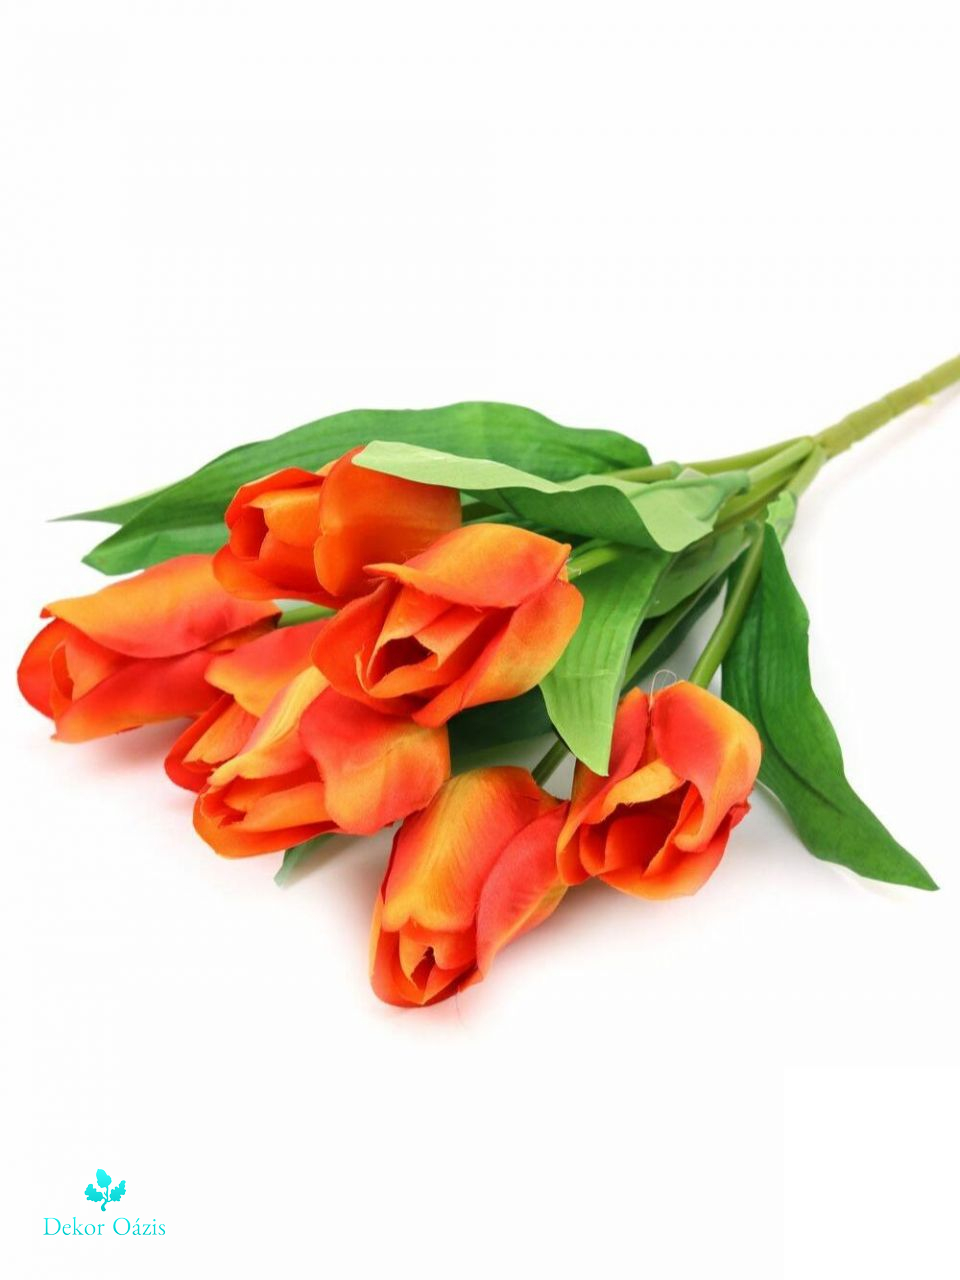 Nagyfejű tulipán csokor 7 fejes - Több színben